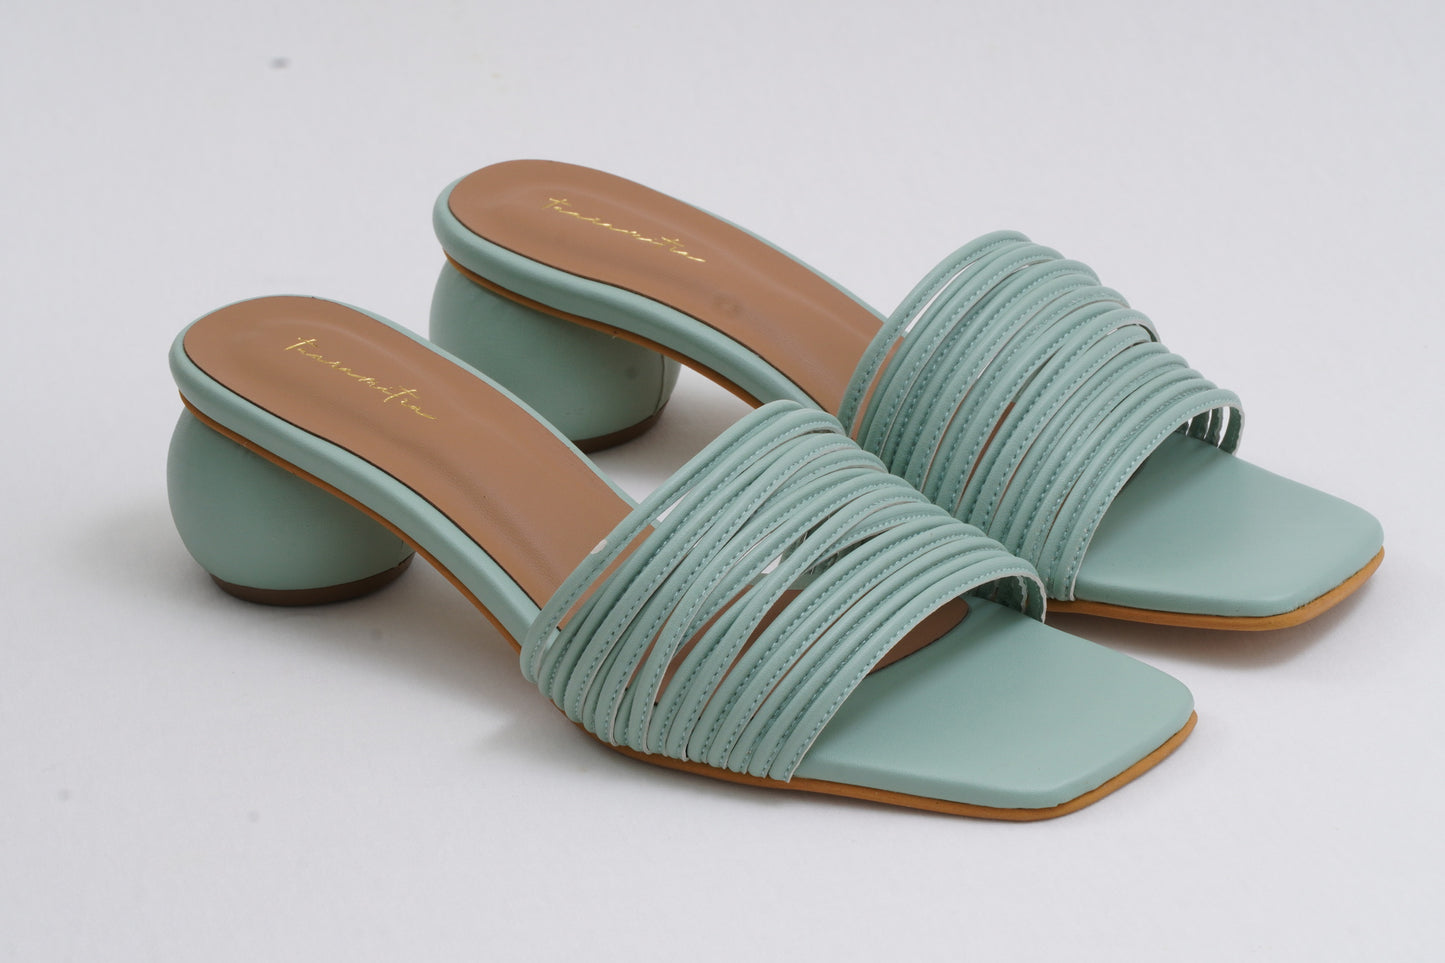 Multistrap round heels in Pastel green